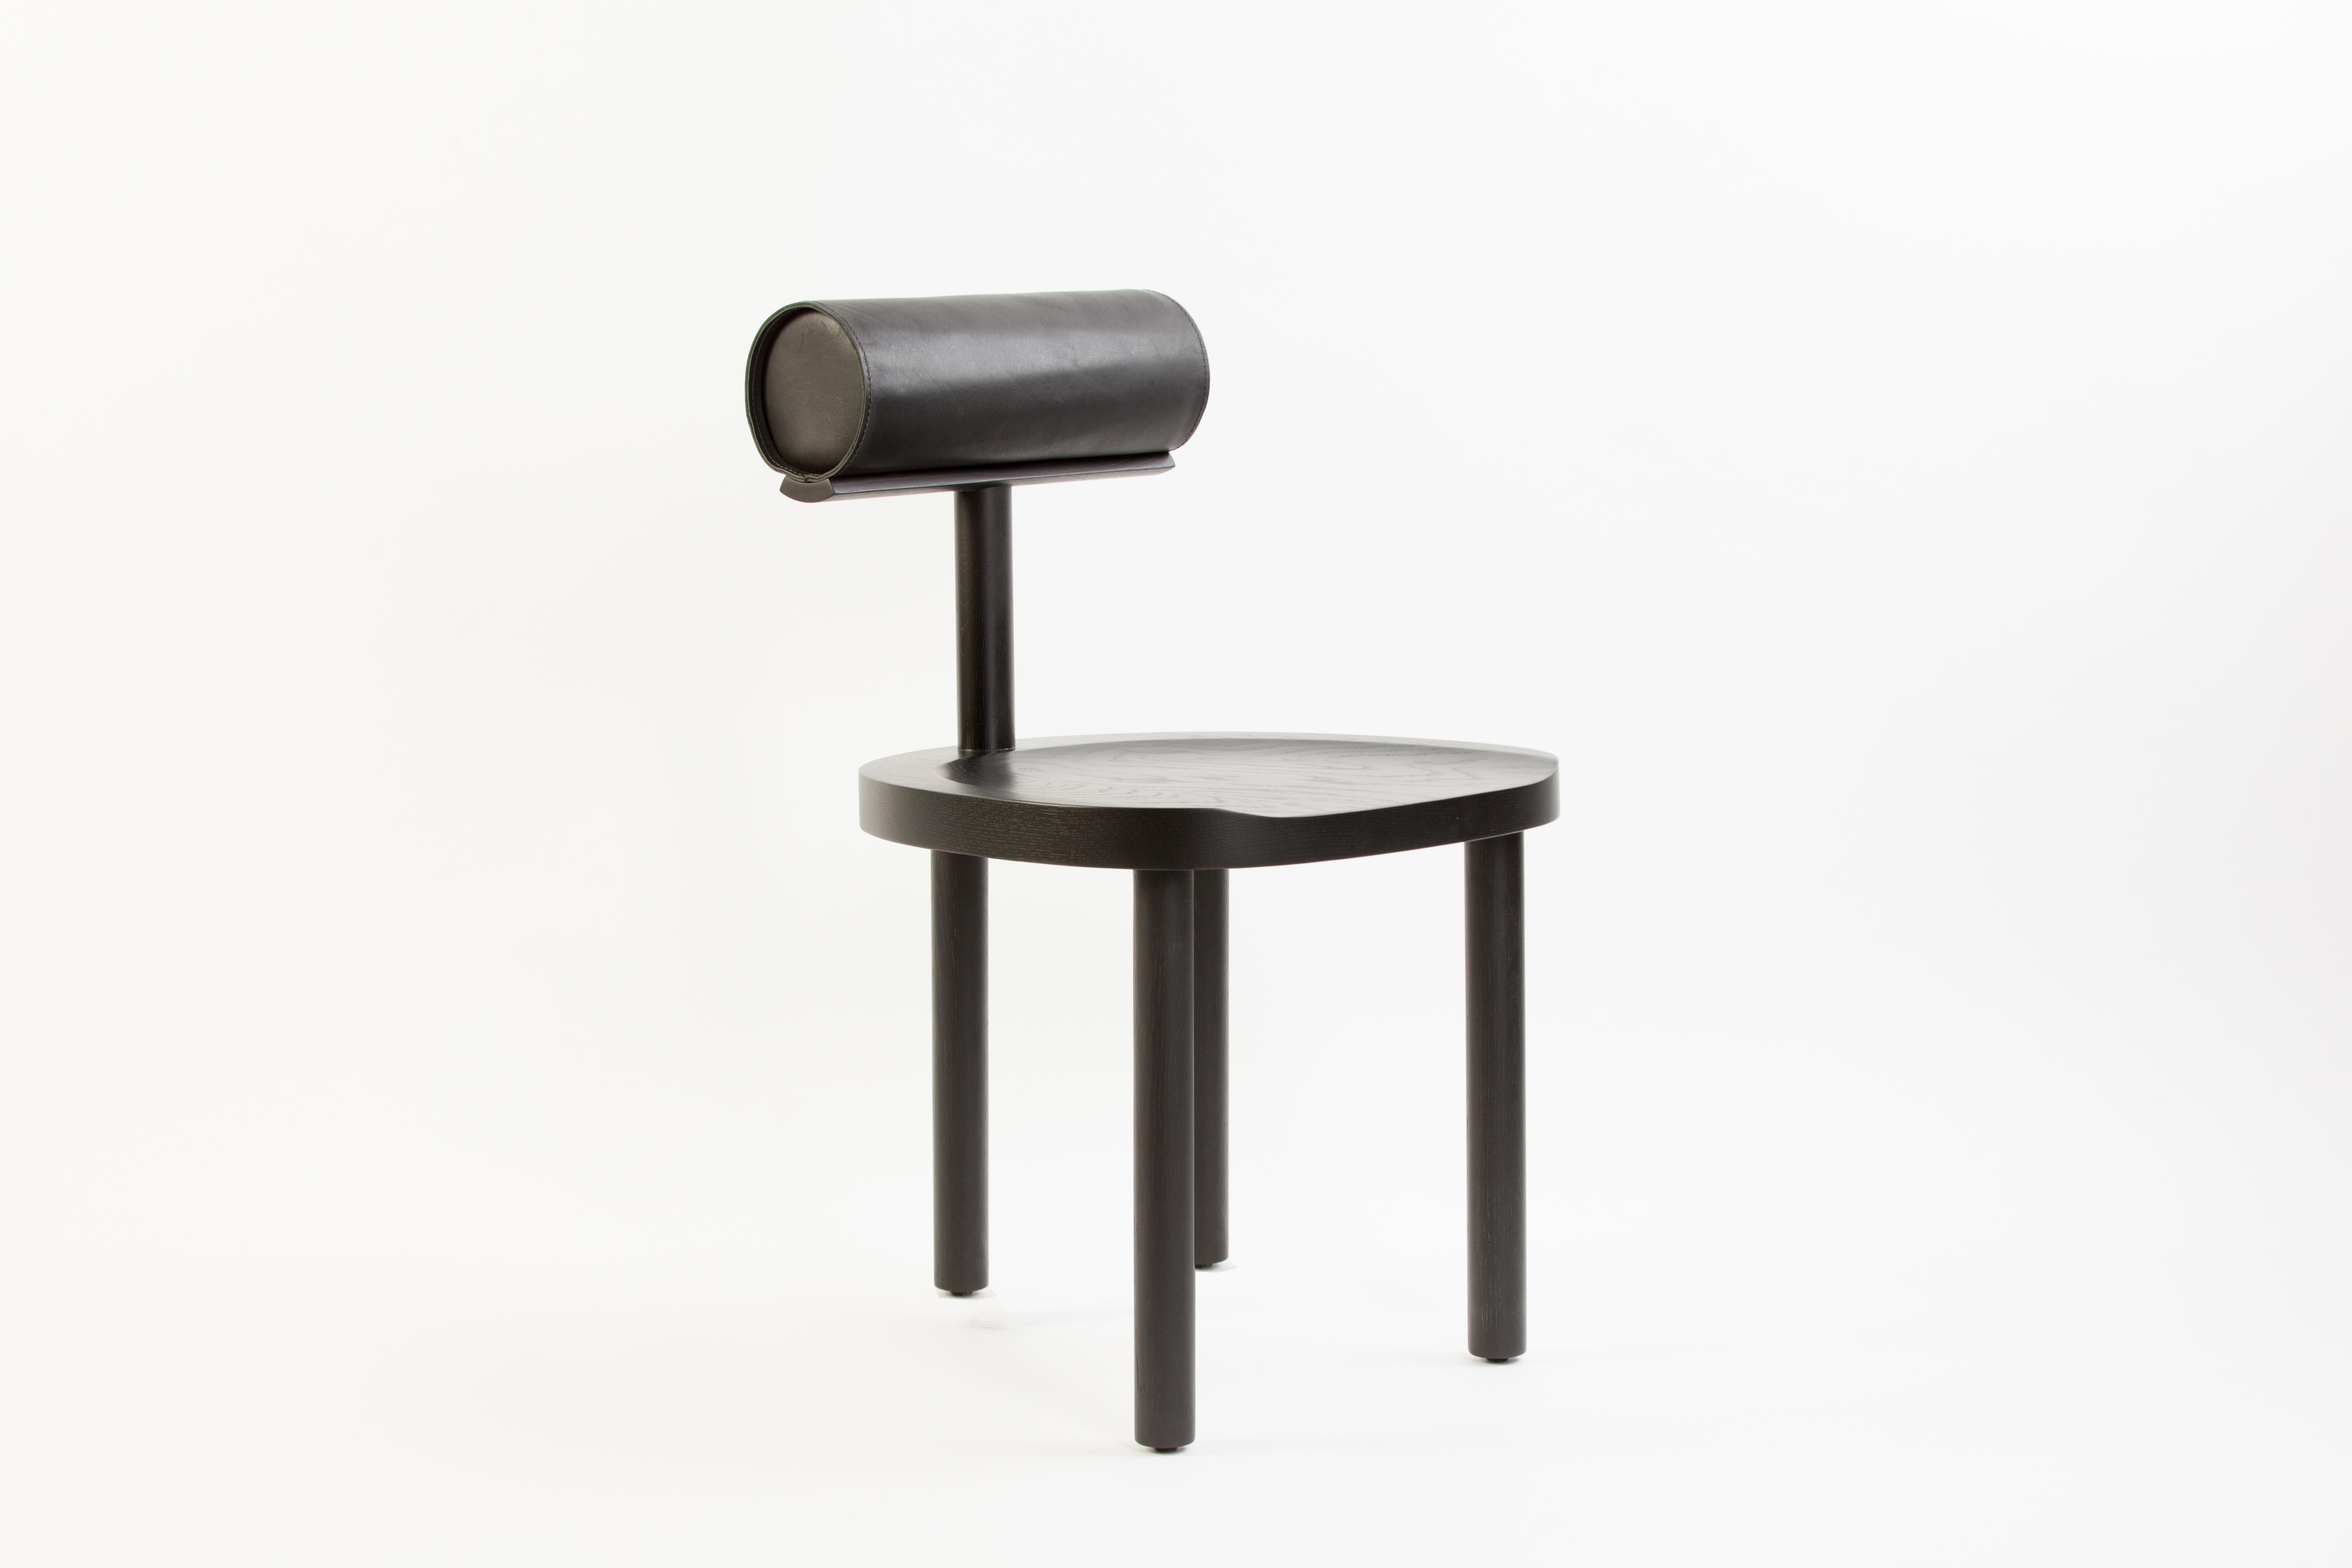 La chaise UNA croise un siège et des pieds ronds en bois avec un dossier cylindrique recouvert de cuir. L'utilisation de ces formes fluides permet de mettre davantage l'accent sur les détails du grain du bois et du dessus en cuir cousu à la